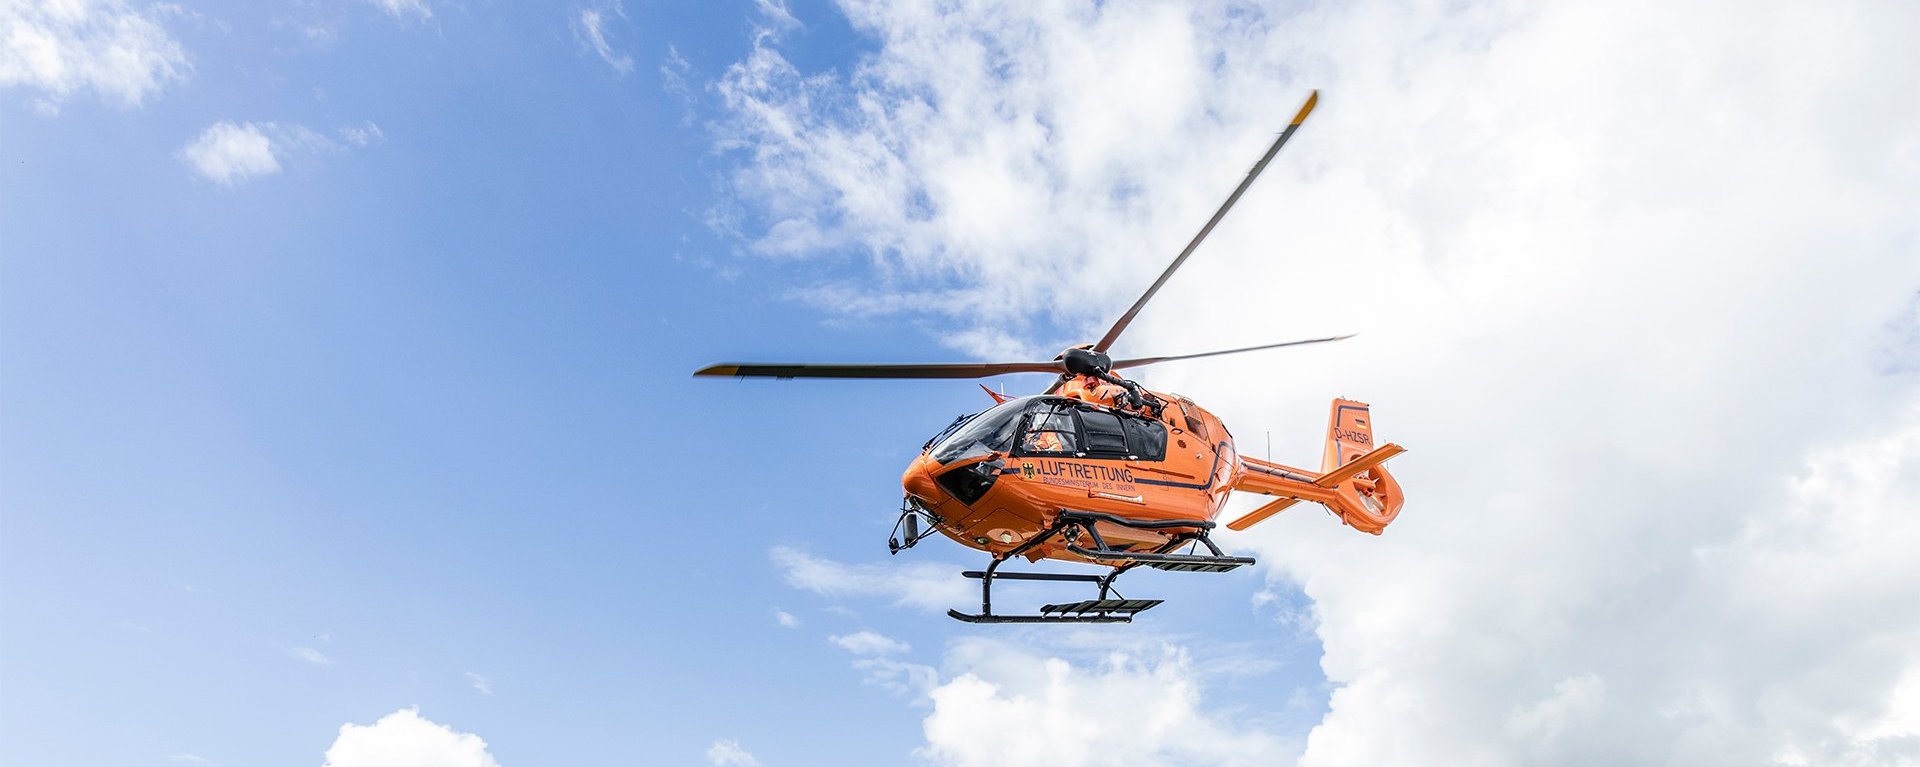 Der orangene Rettungshubschrauber Christoph 17 fliegt vor einem strahlend blauen Himmel mit weißen Wolken durch die Luft.